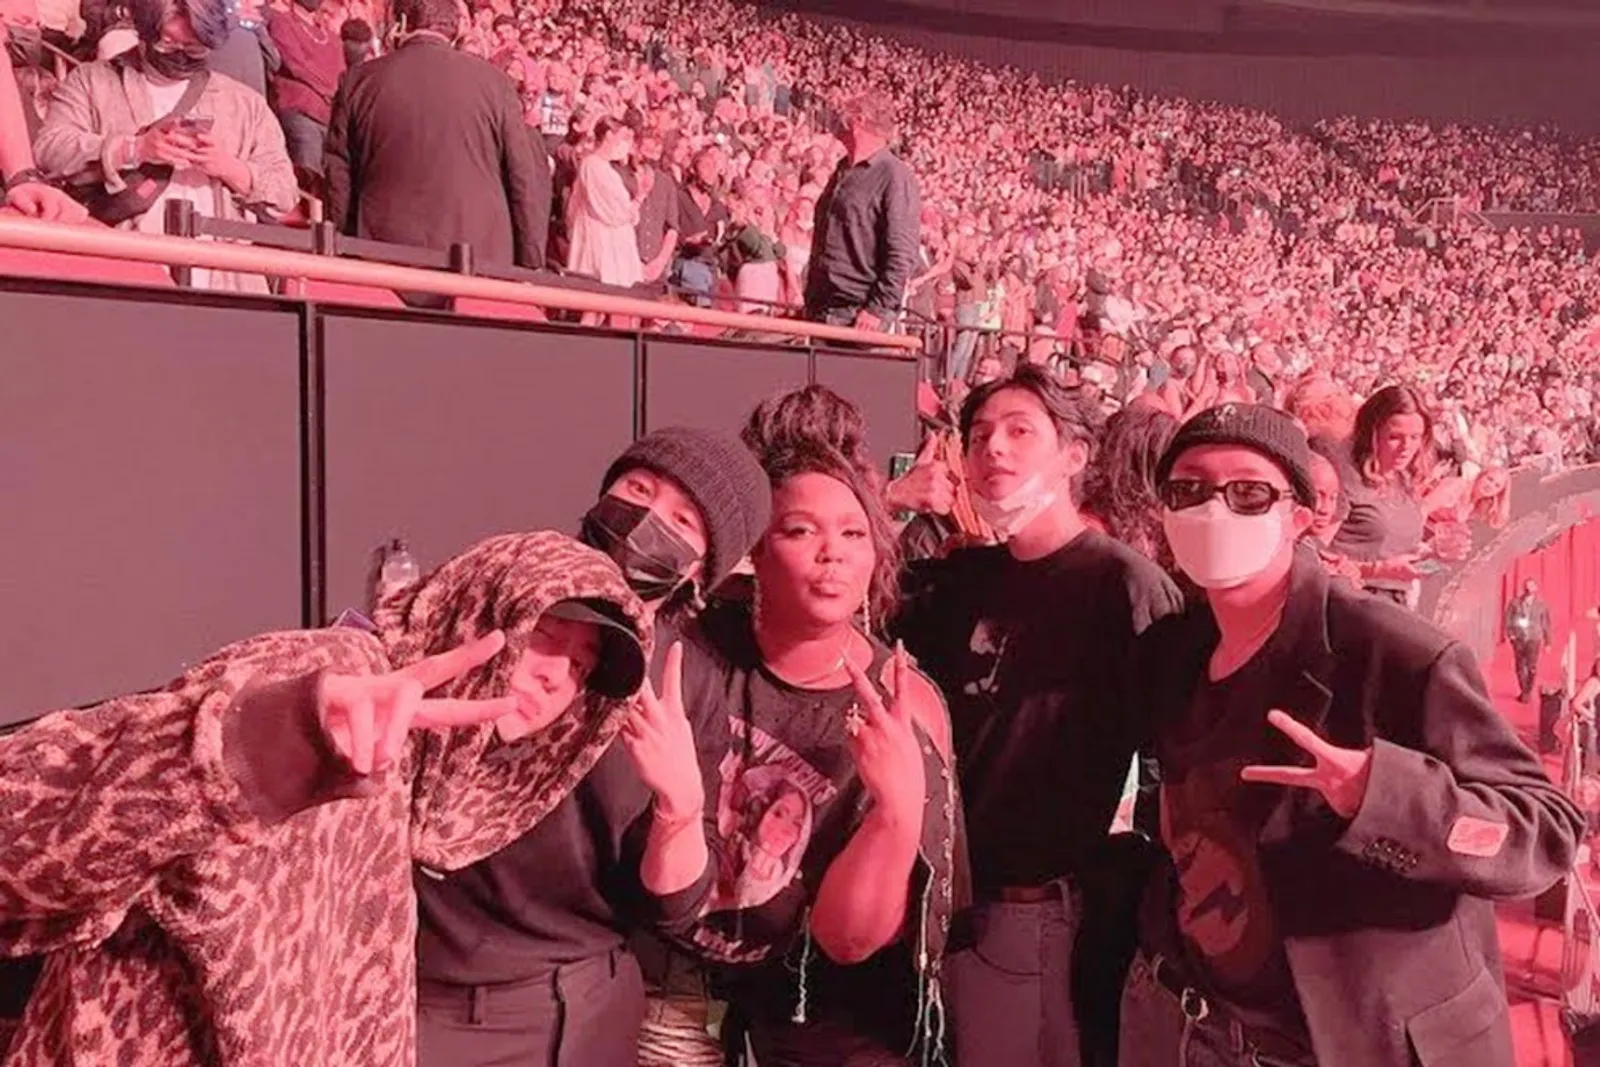 SZA Diduga Berbohong, BTS Jadi Korban Rasisme di Konser Harry Styles